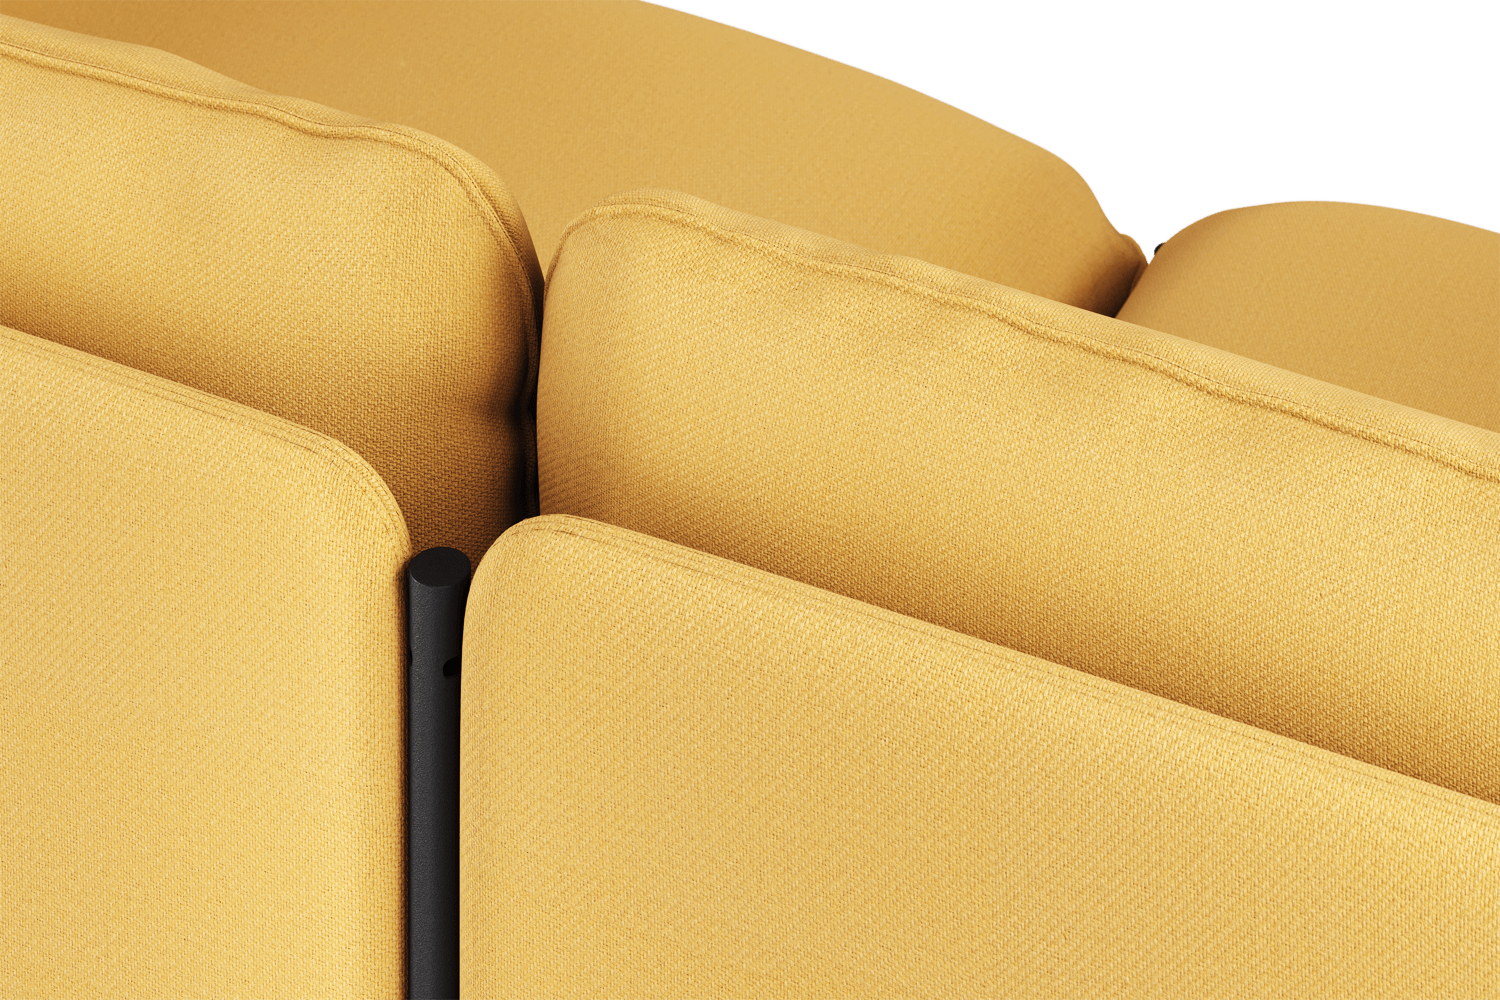 Toom Modular Sofa 4-Sitzer Konfiguration 1a in Yellow Ochre präsentiert im Onlineshop von KAQTU Design AG. 4er Sofa ist von Noo.ma